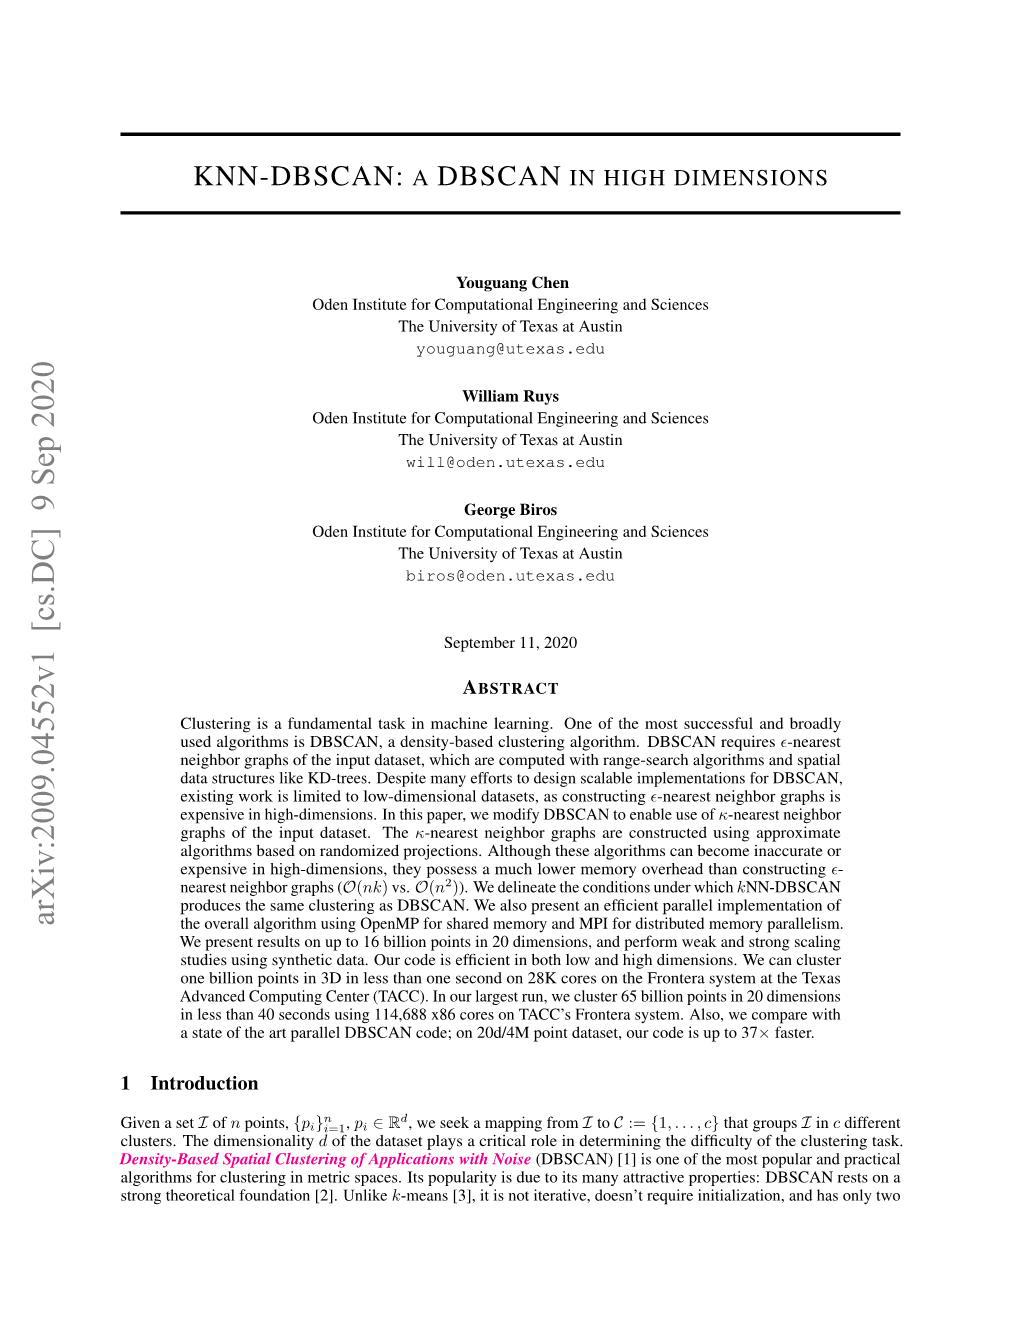 KNN-DBSCAN: a DBSCAN in High Dimensions